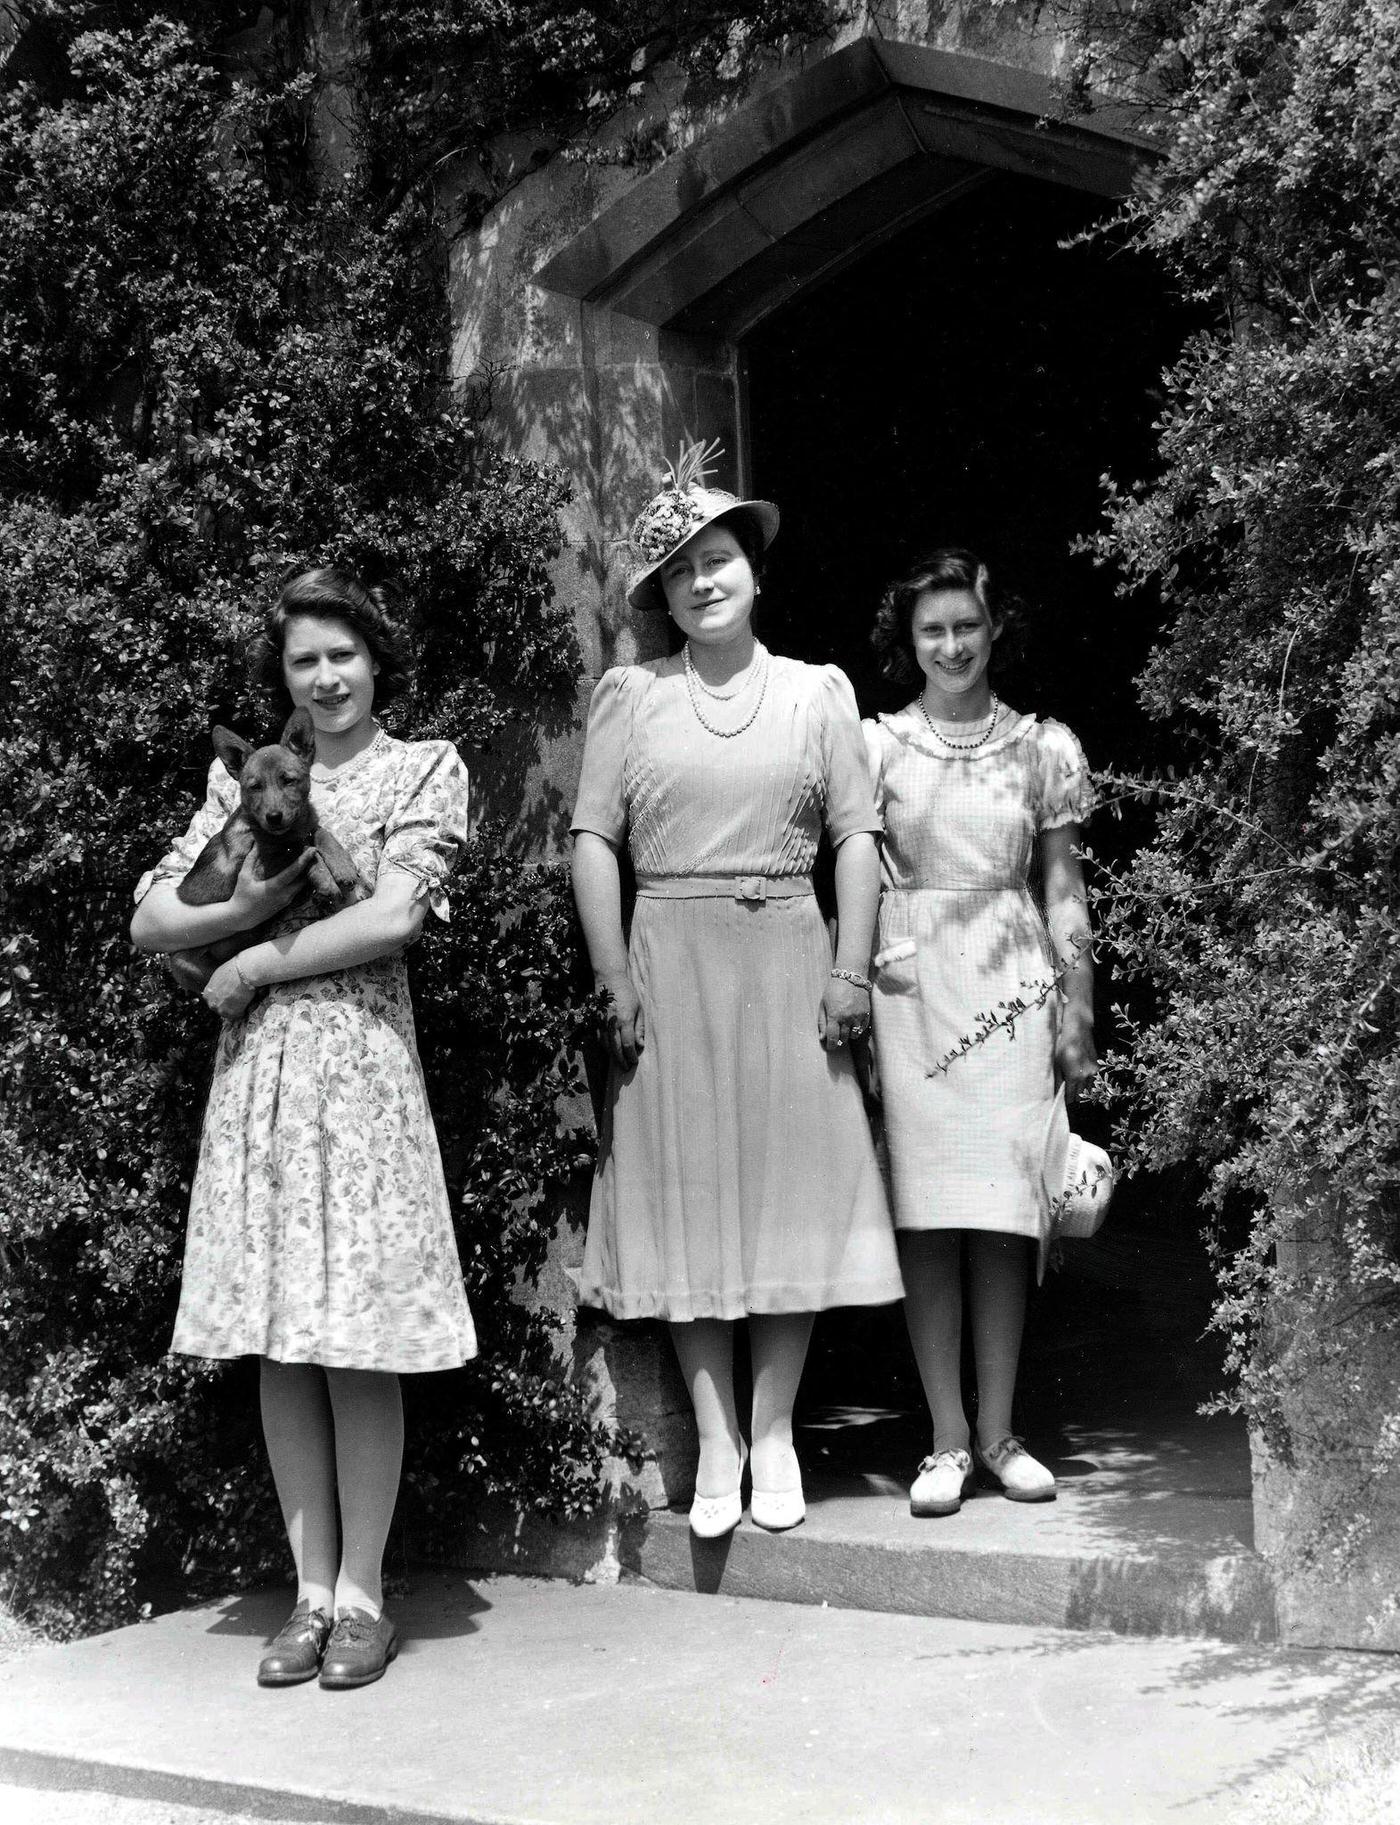 Queen Elizabeth with Princesses Margaret and Elizabeth and a Pembroke Welsh Corgi dog, Royal Lodge, Windsor Great Park, 1940.